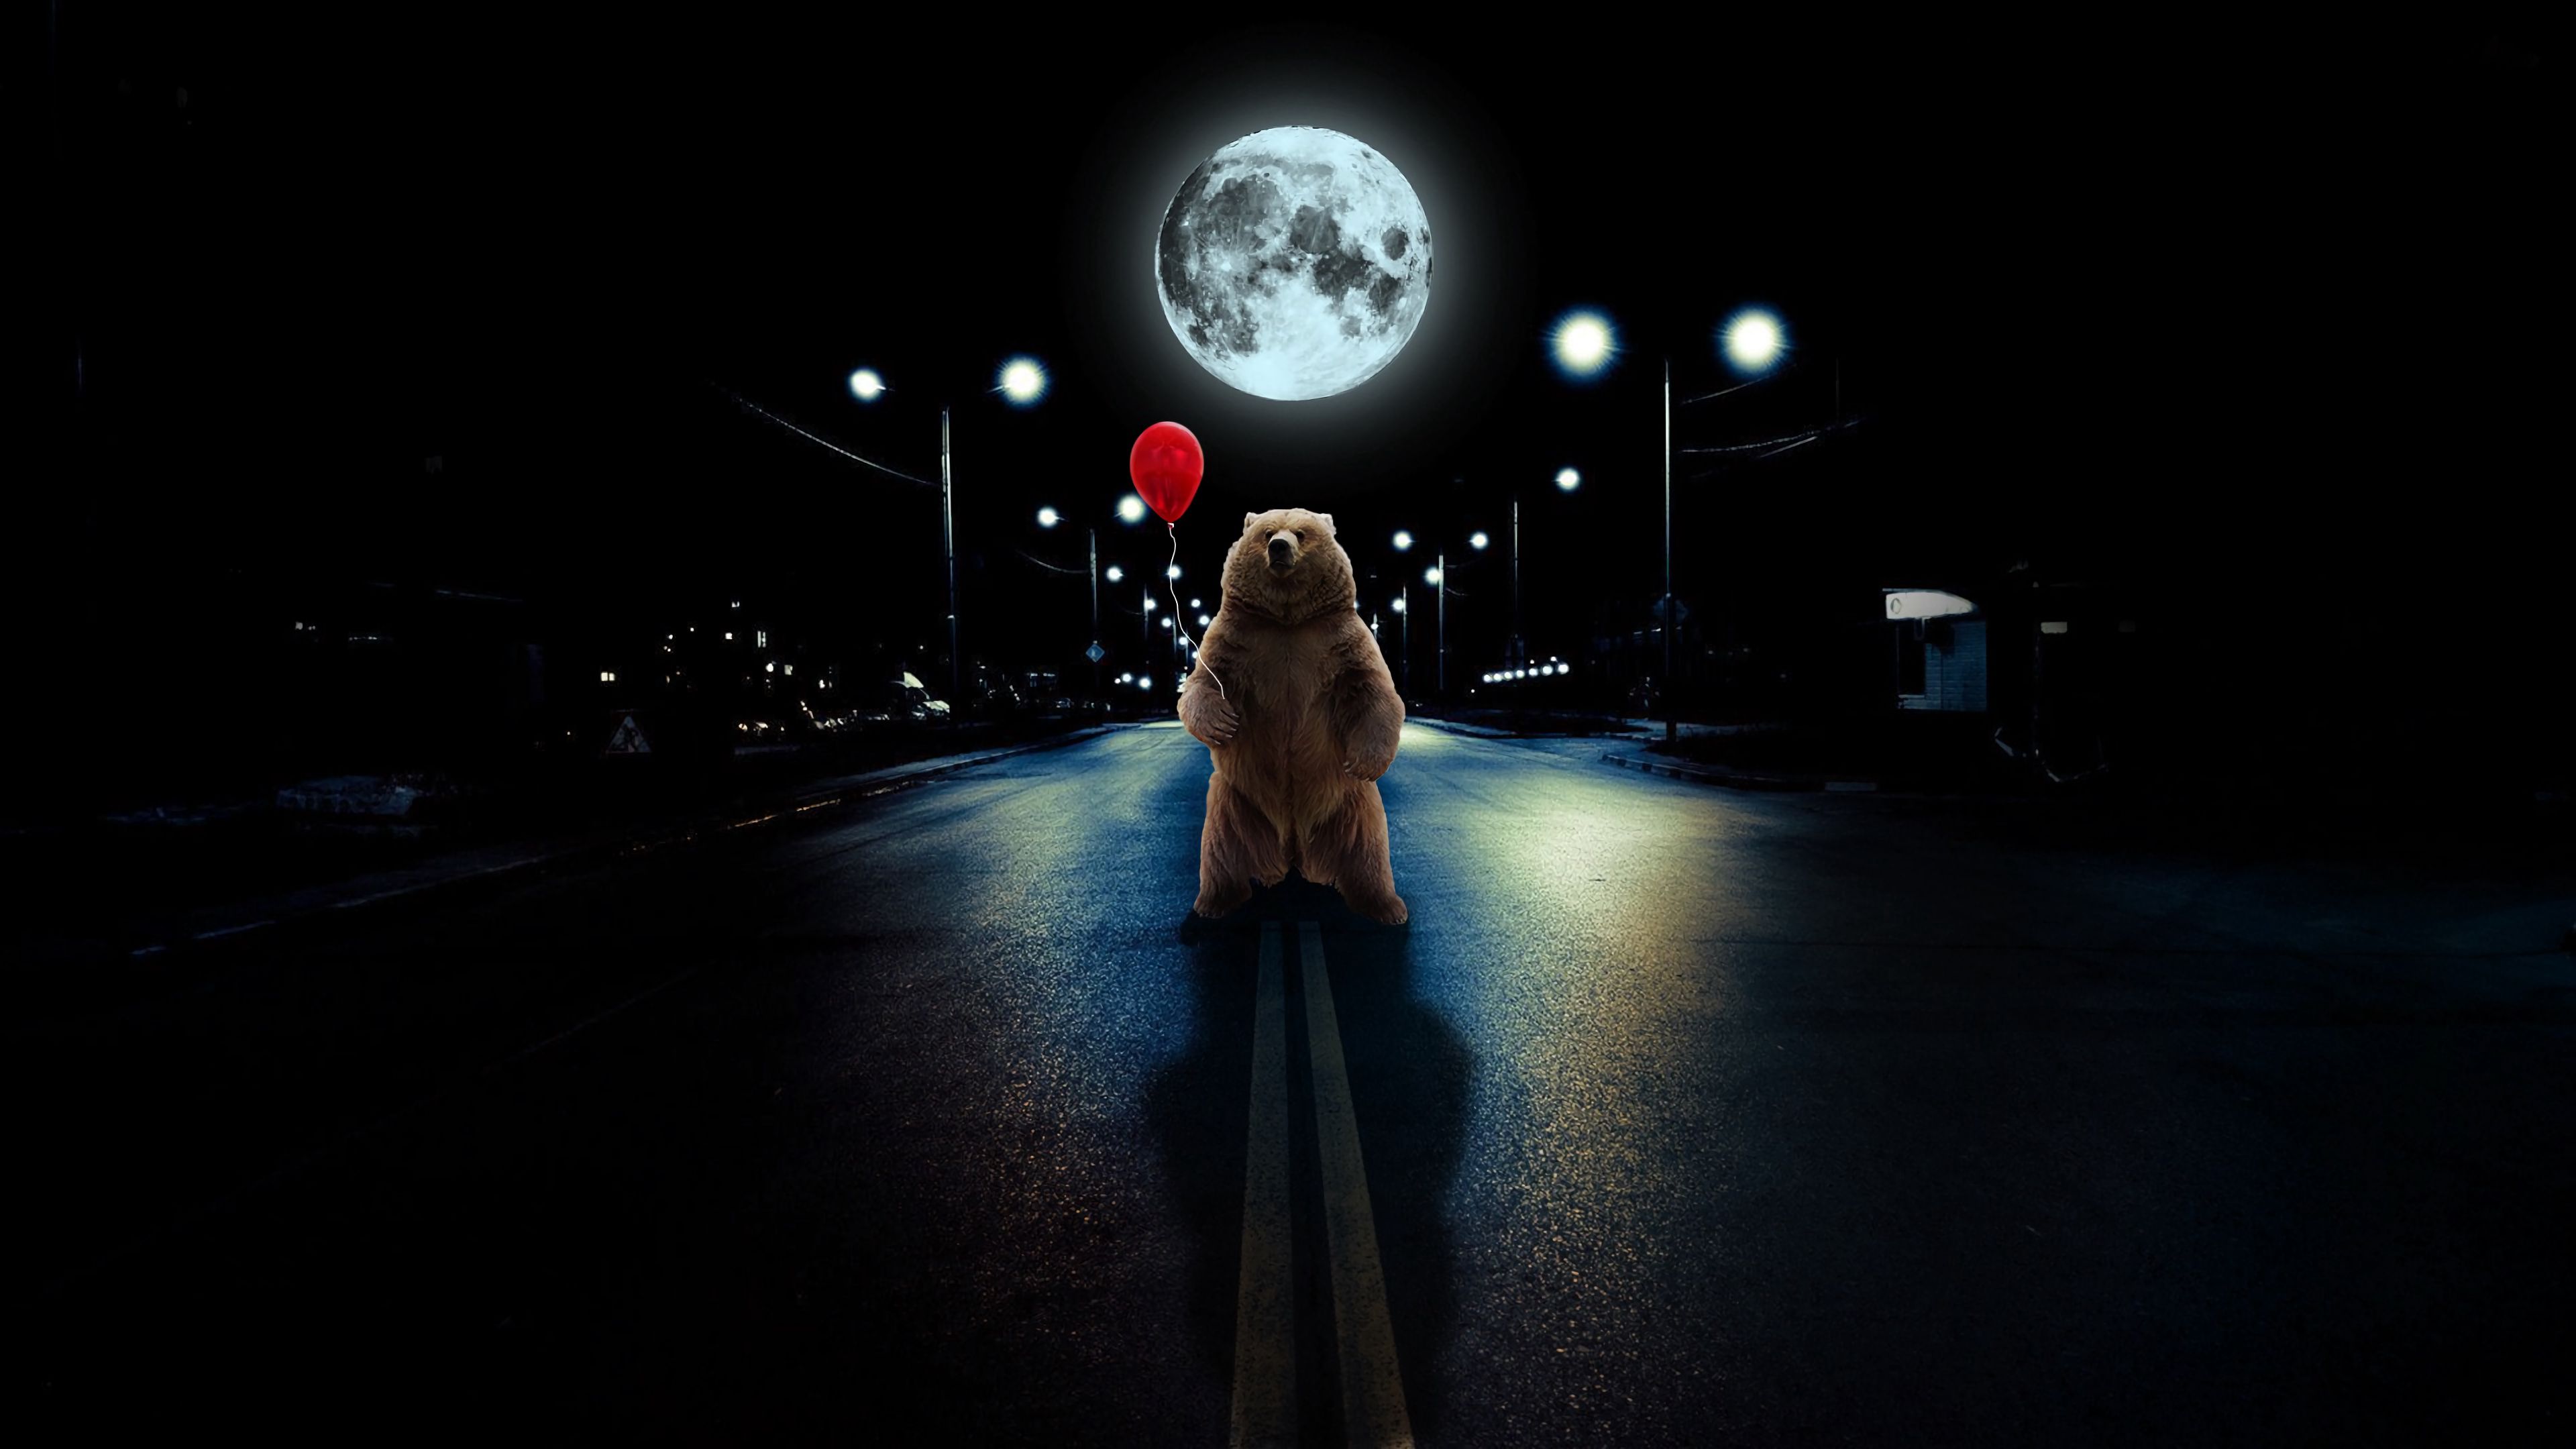 bear, full moon, photoshop, art, road, balloon